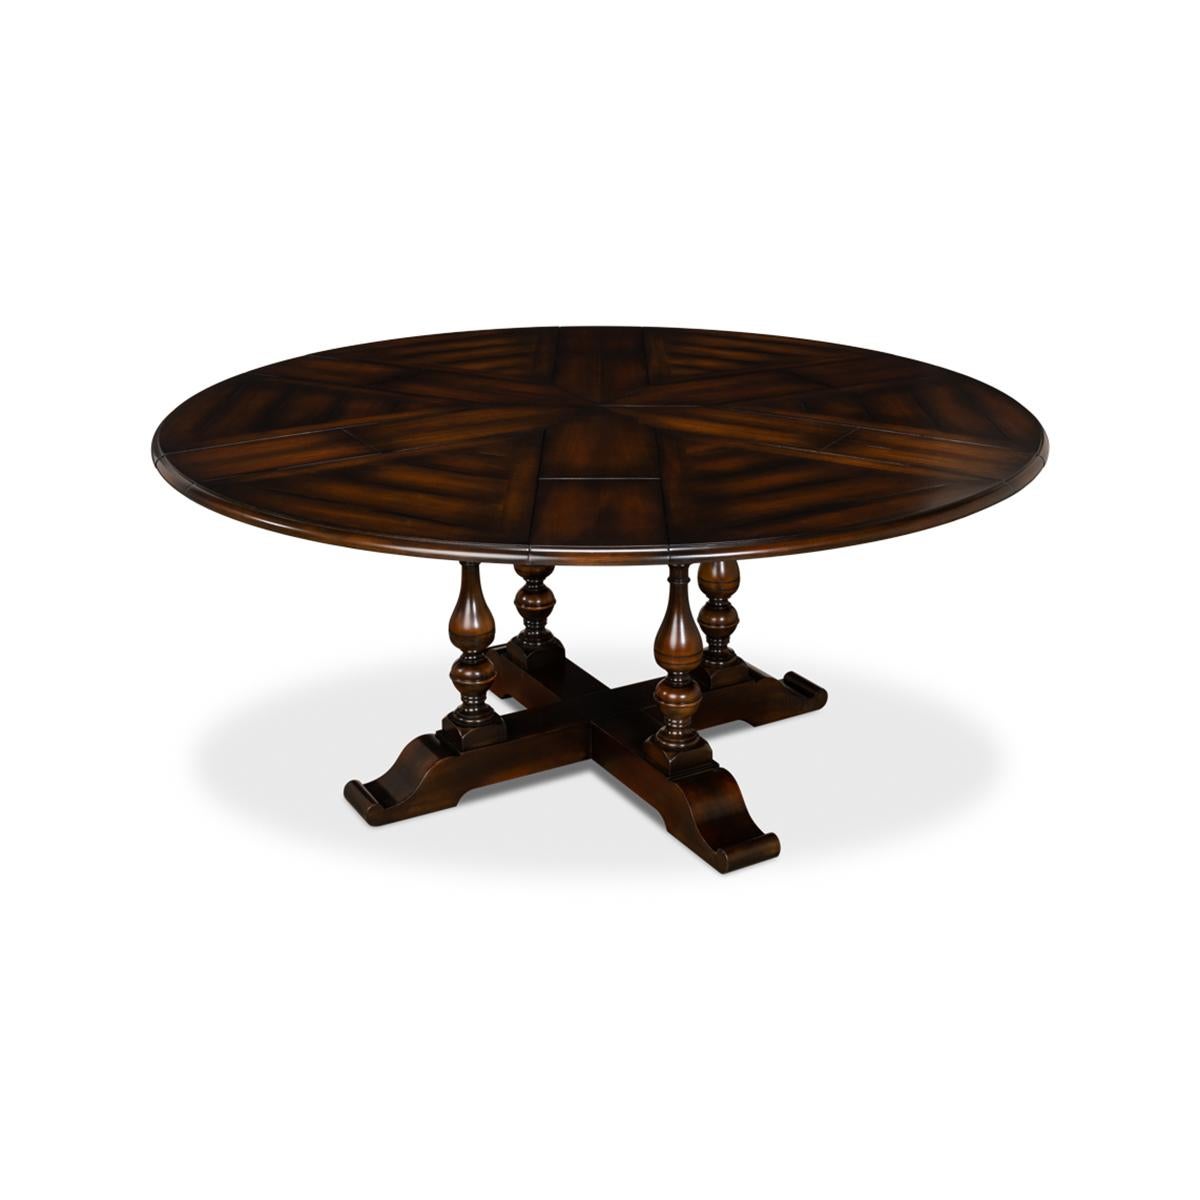 Wood English Style Round Extension Dining Table - Ebony Finish, 70